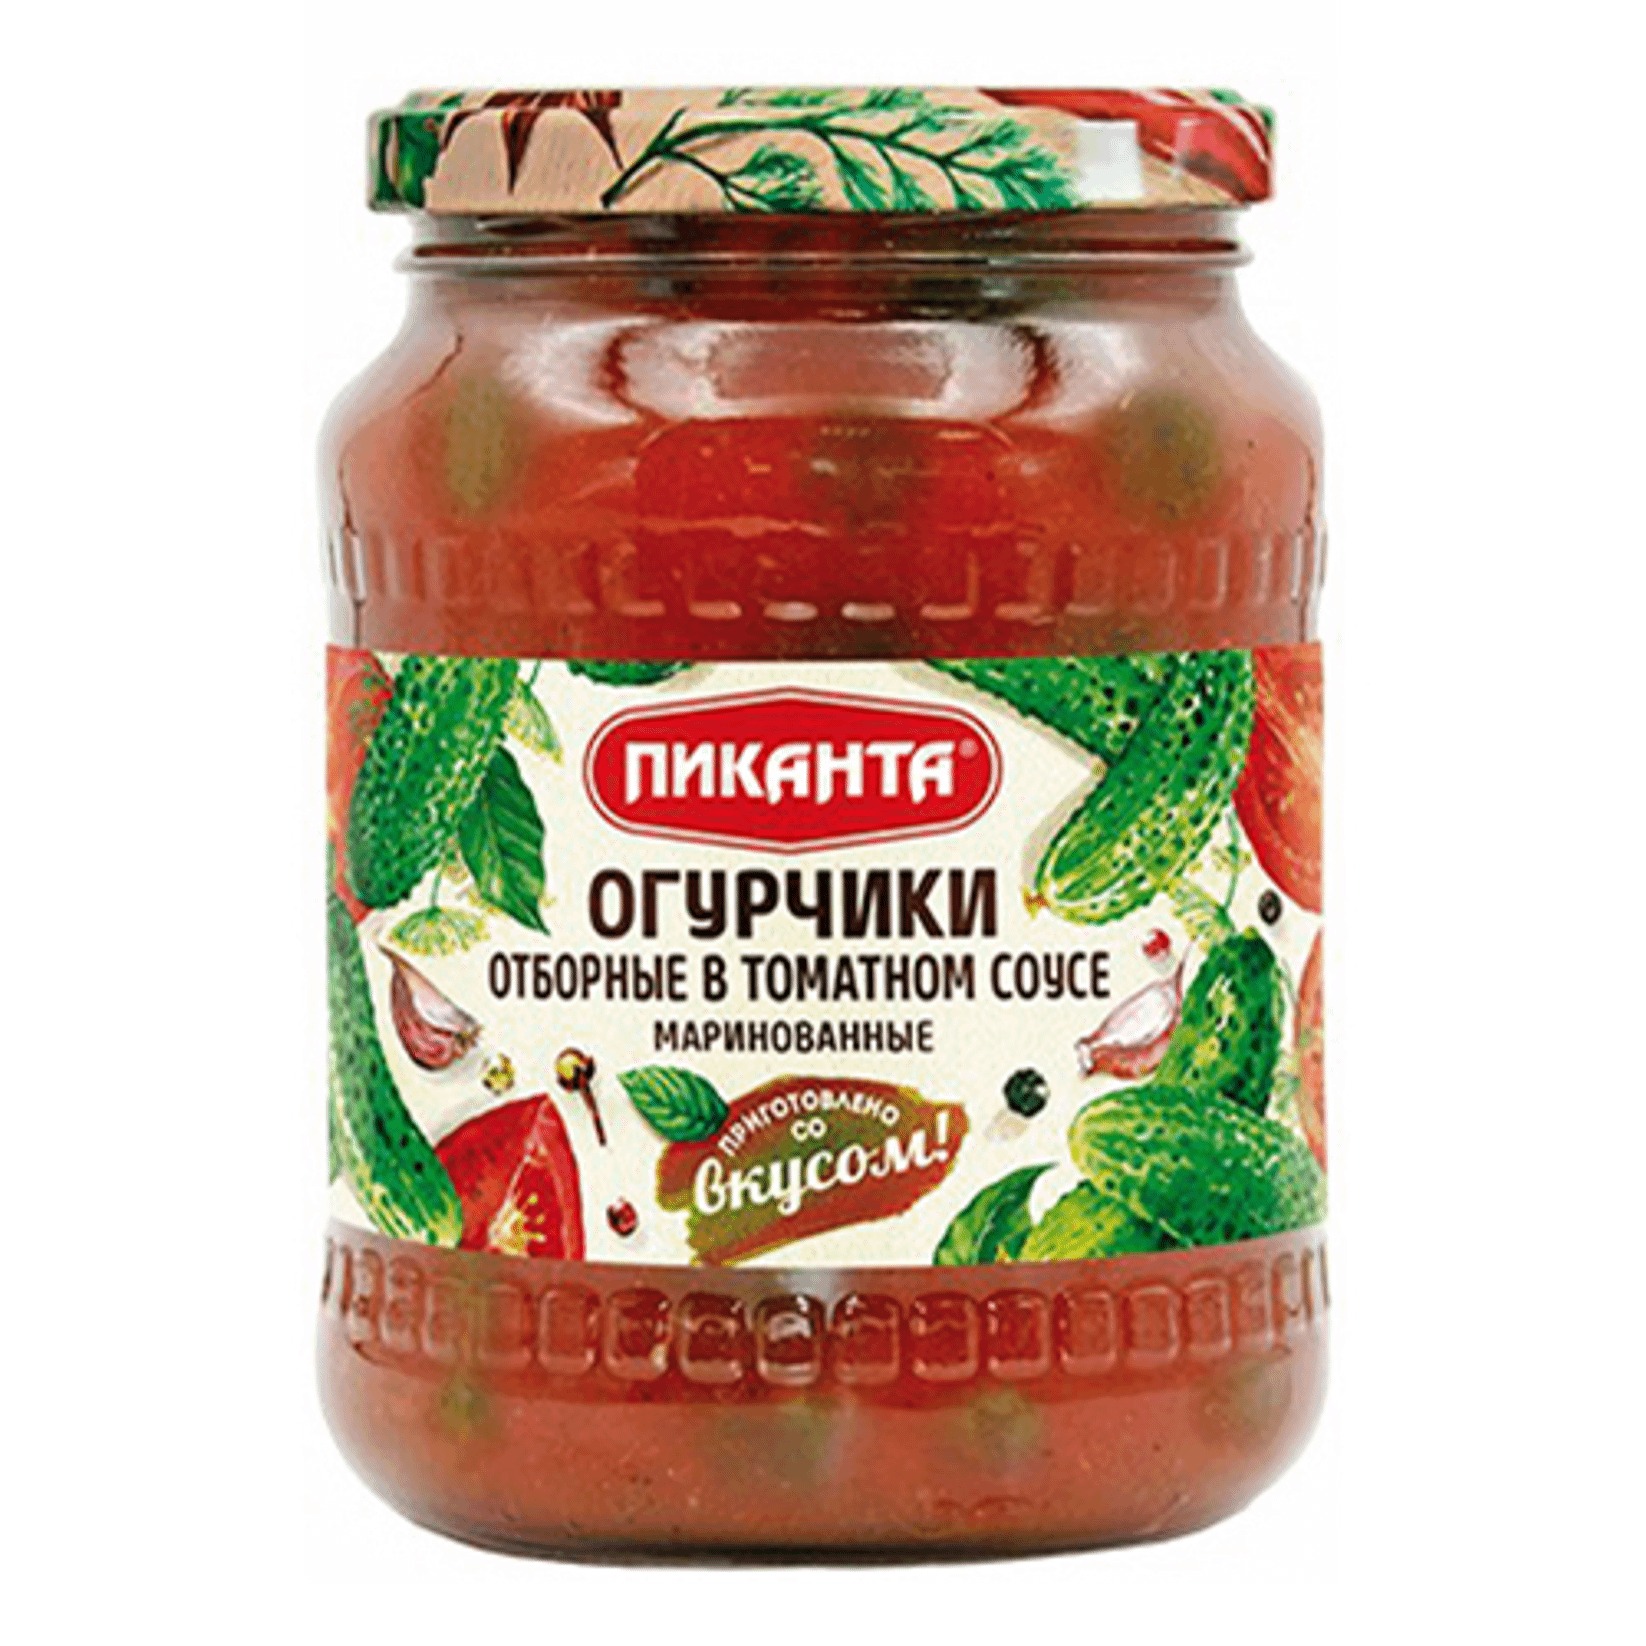 Огурчики Пиканта маринованные в томатном соусе, 700 г килька балтийская знаток прод по мексикански в томатном соусе 240 г